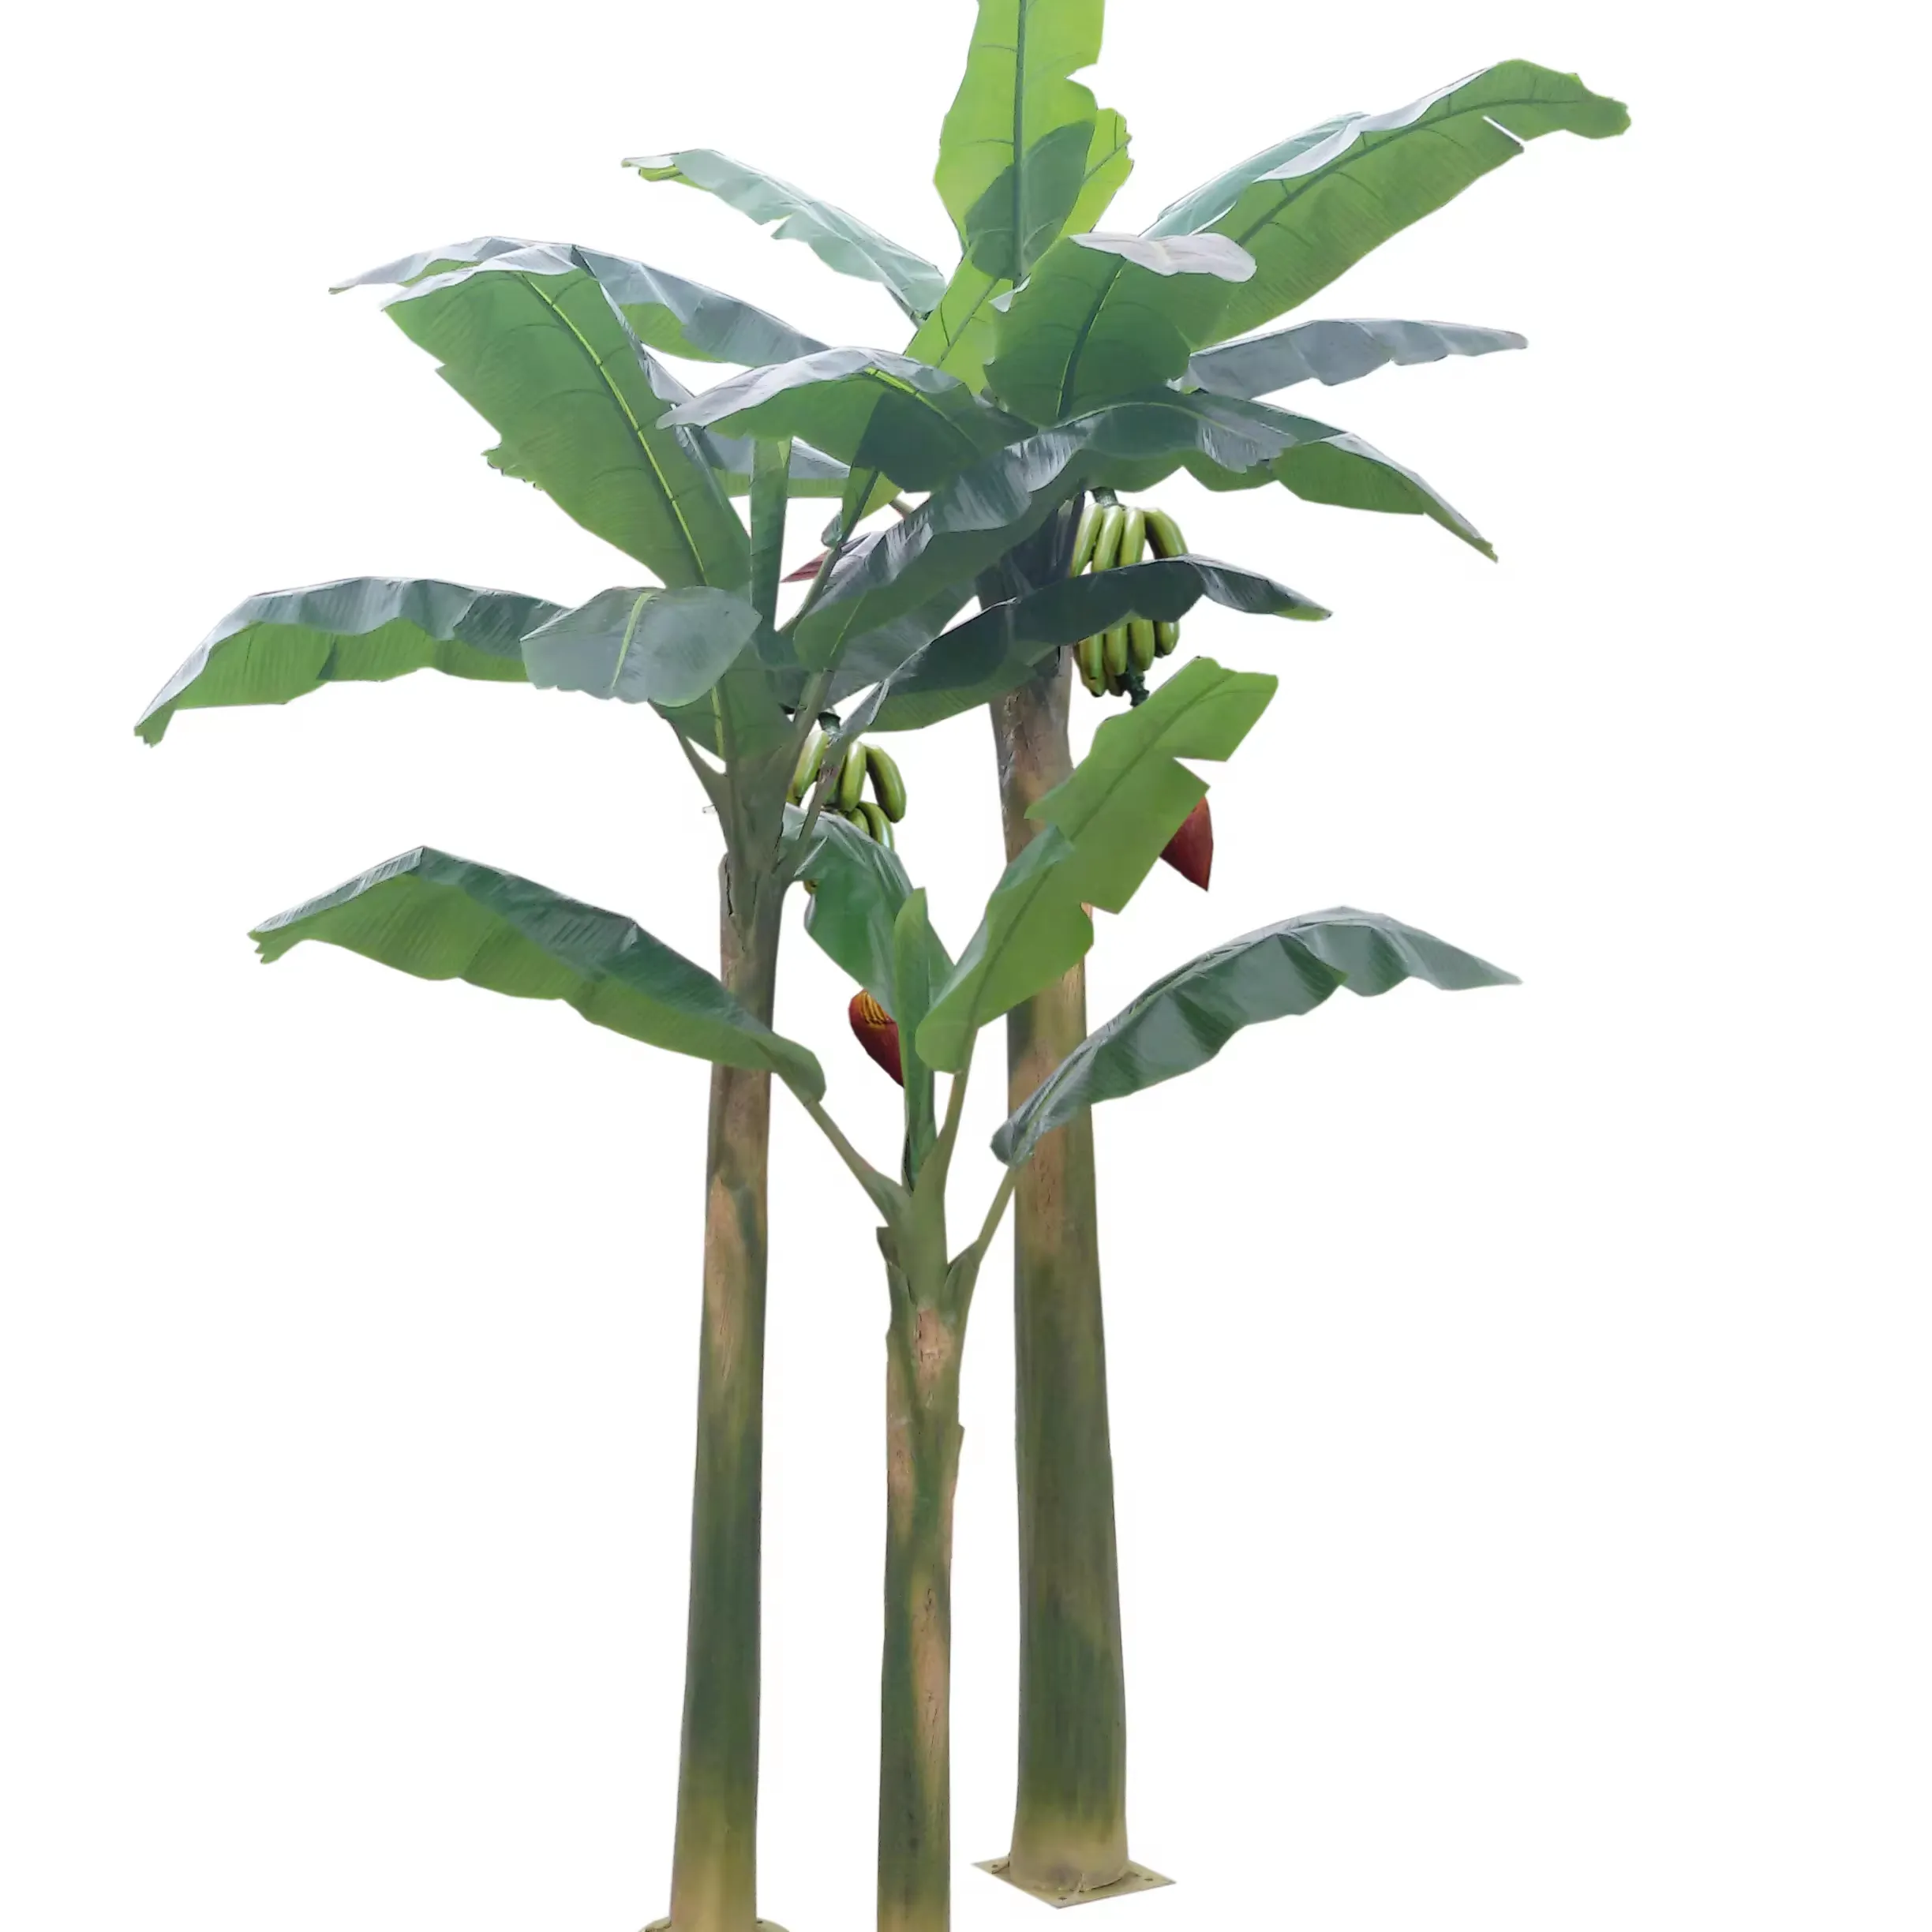 شجرة الموزا الصناعية الكبيرة المقاومة للماء في الهواء الطلق شجرة شجر الموز أجداد الخضراء للزينة العامة شجرة كبيرة من الألياف الزجاجية للبيع بالجملة